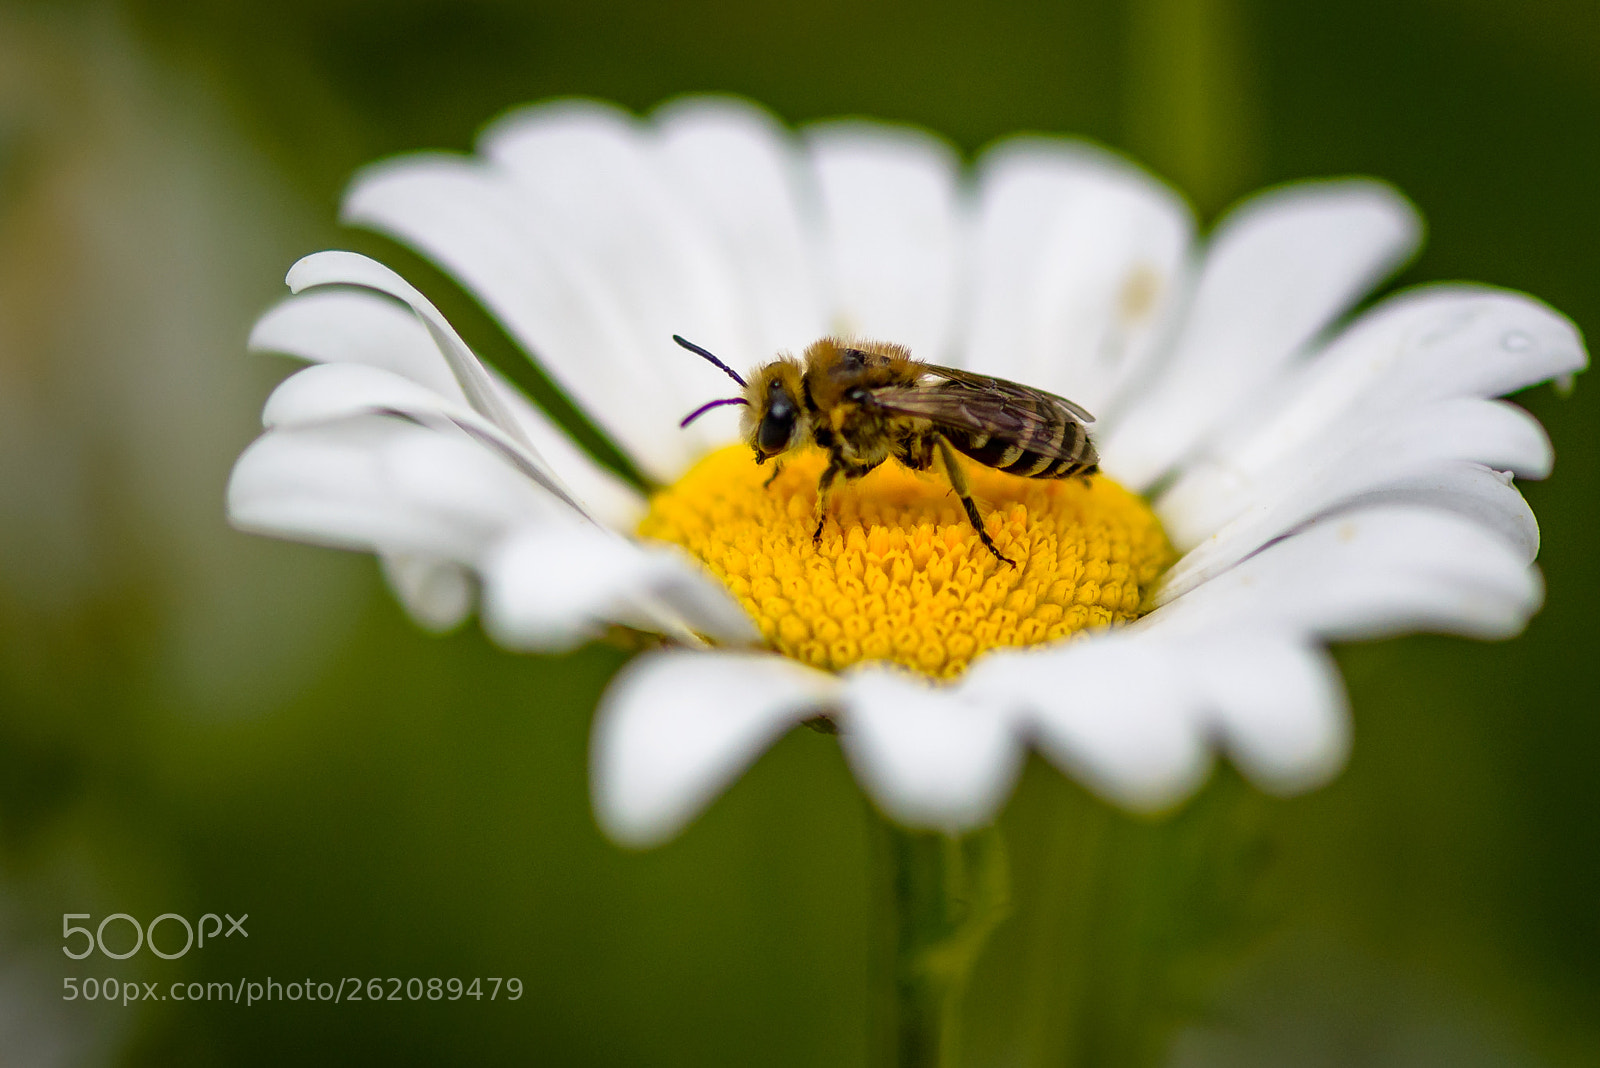 Nikon D800 sample photo. Daisy+bee photography